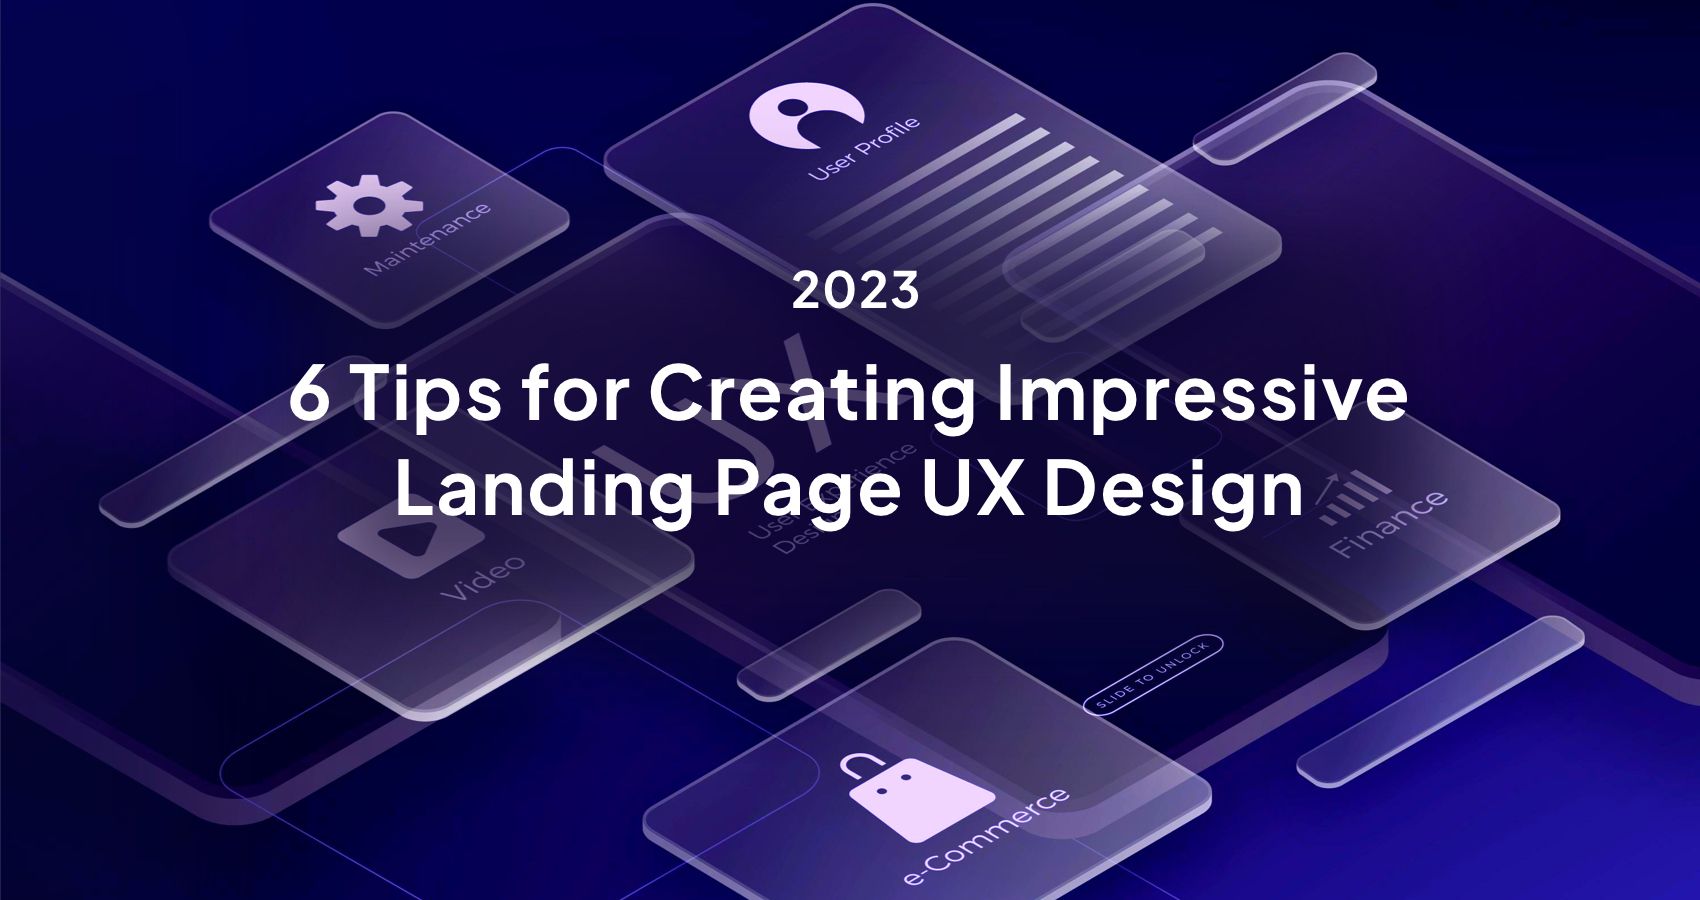 6-tips-for-creating-impressive-landing-page-ux-design-2023